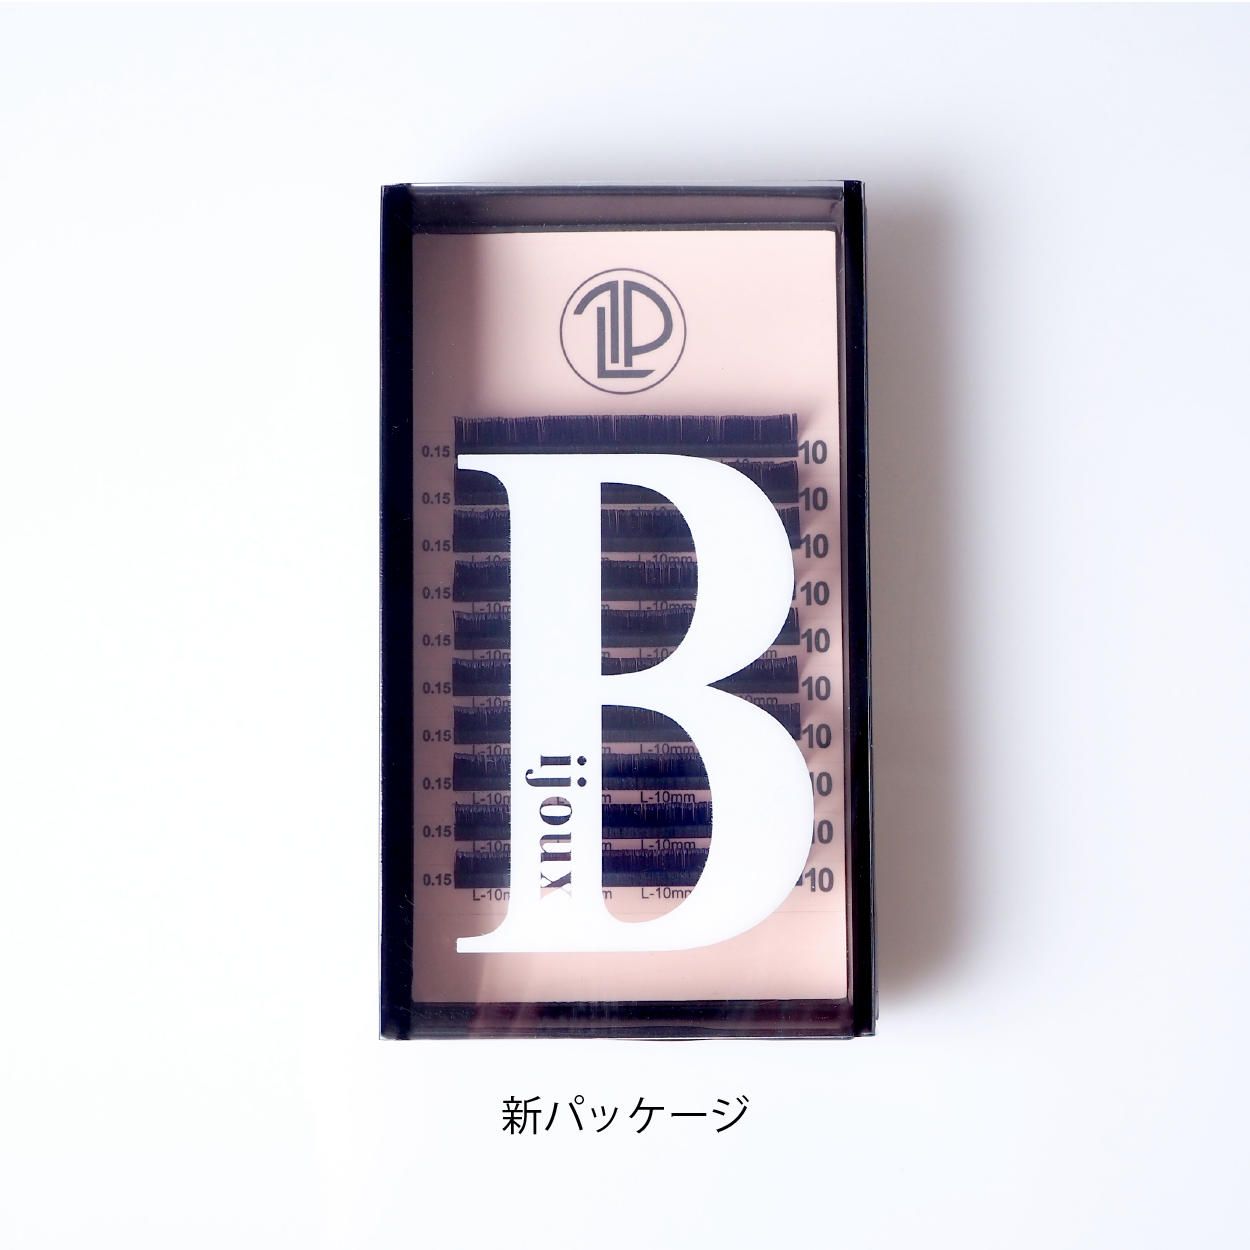 【MIX】Bijoux サファイア/ 0.15mm